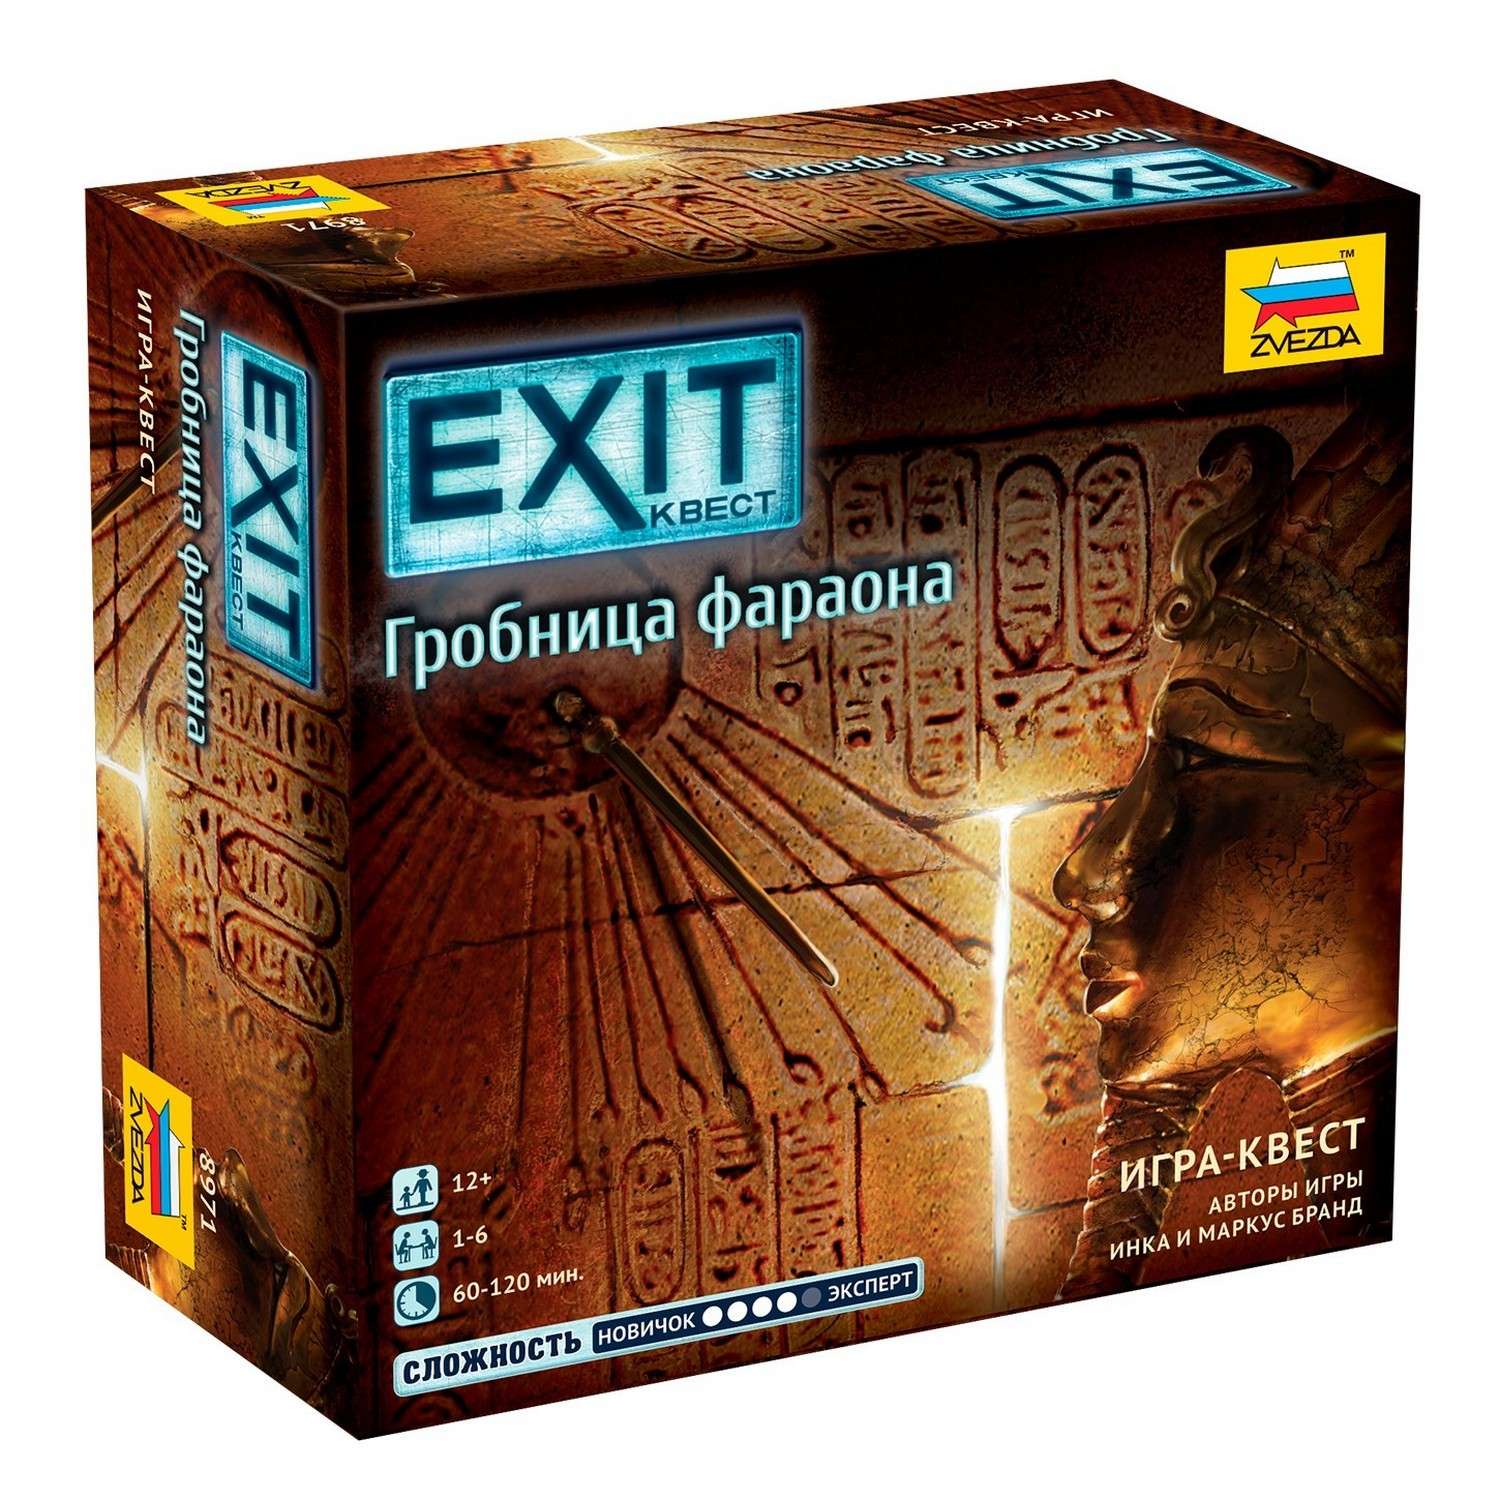 Игра настольная Звезда Exit Гробница фараона 8971 - фото 1